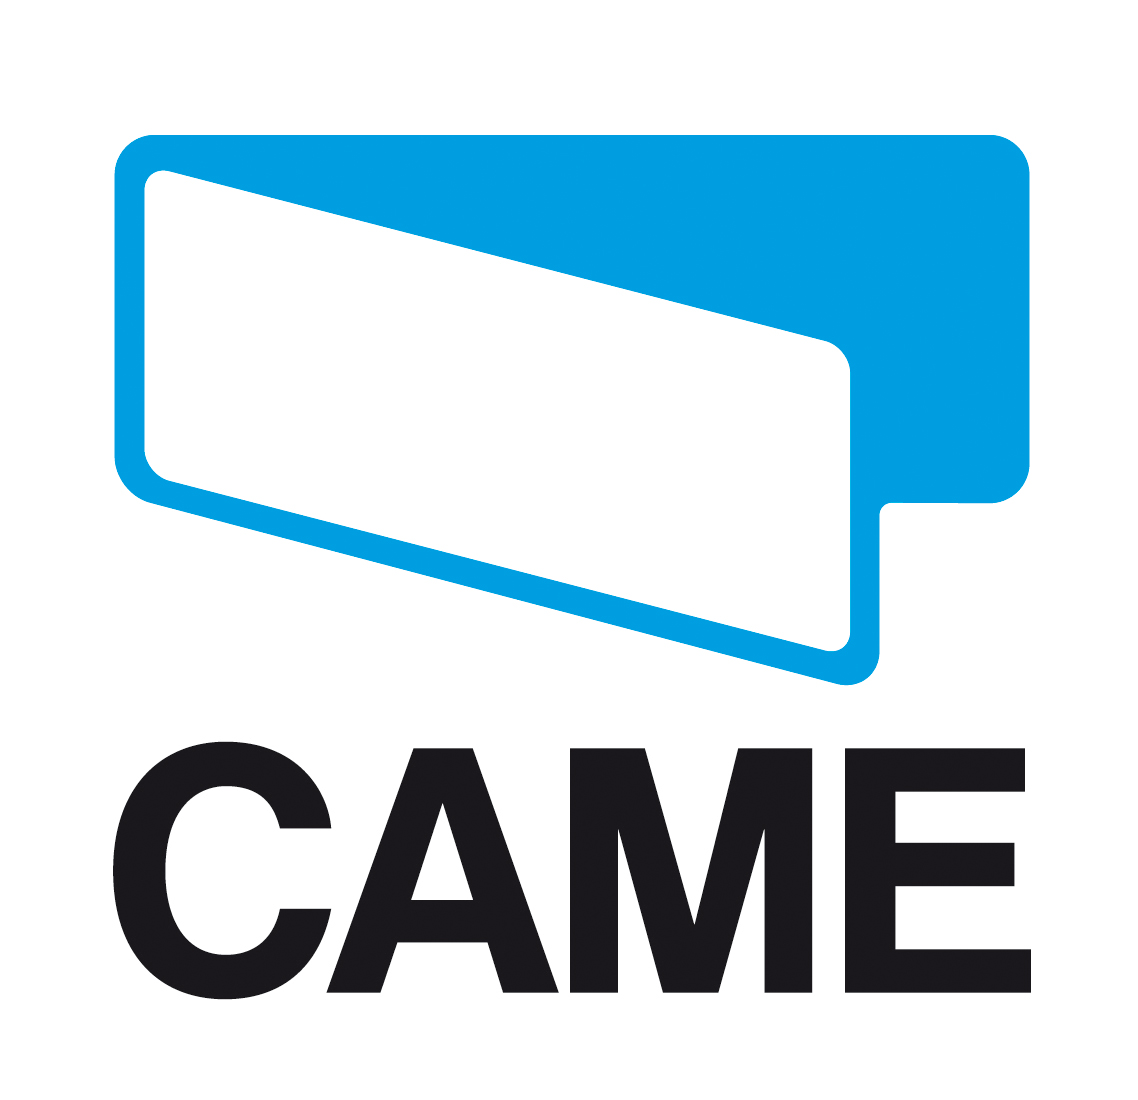 logo-came